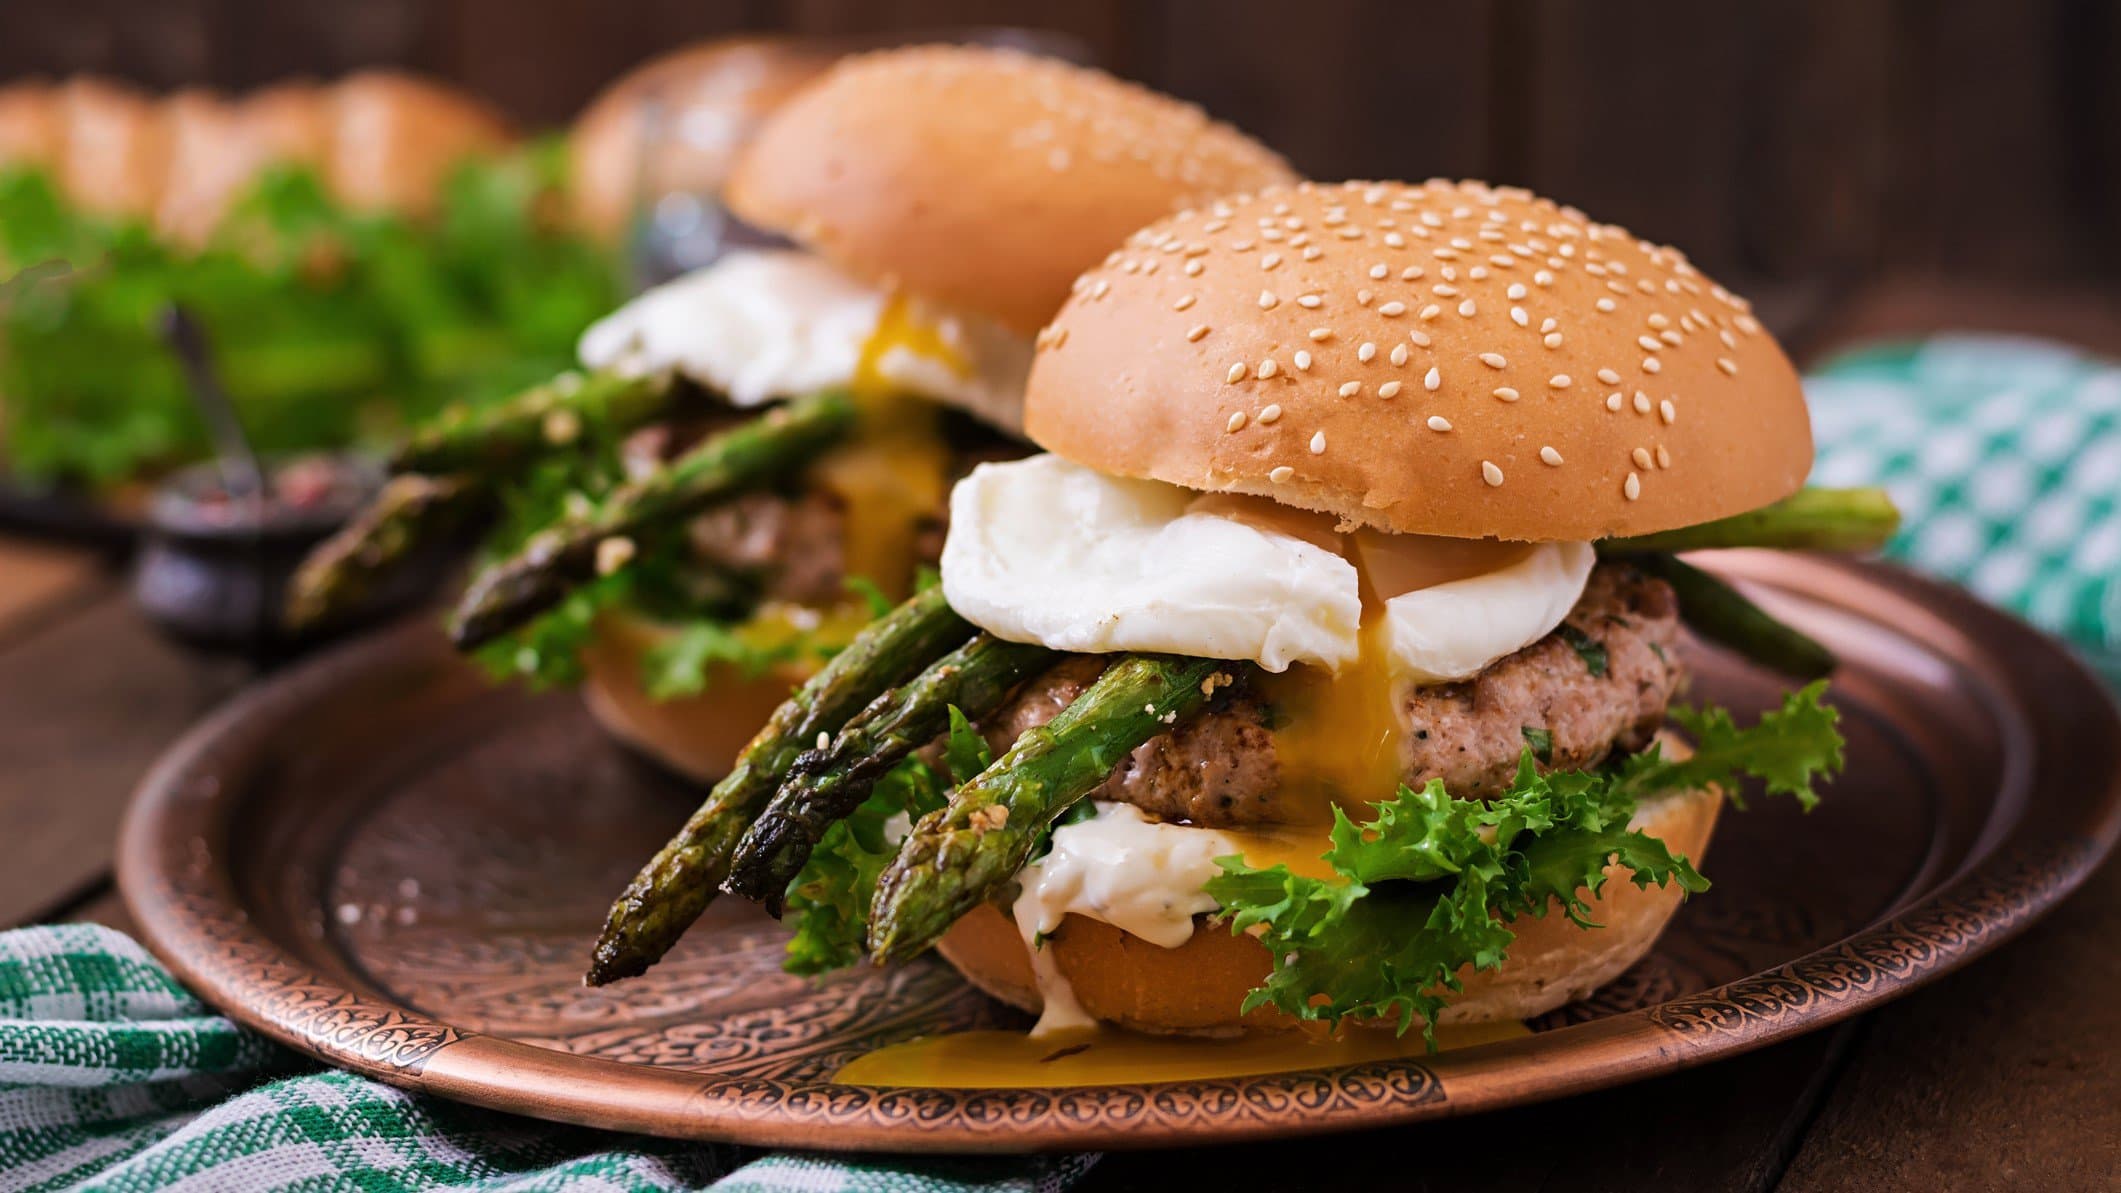 Zwei Spargel-Burger mit pochiertem Ei, Chicken-Patty, grünem Spargel und Burrata auf braunem Teller. Im Hintergrund weitere Zutaten. Frontalansicht.